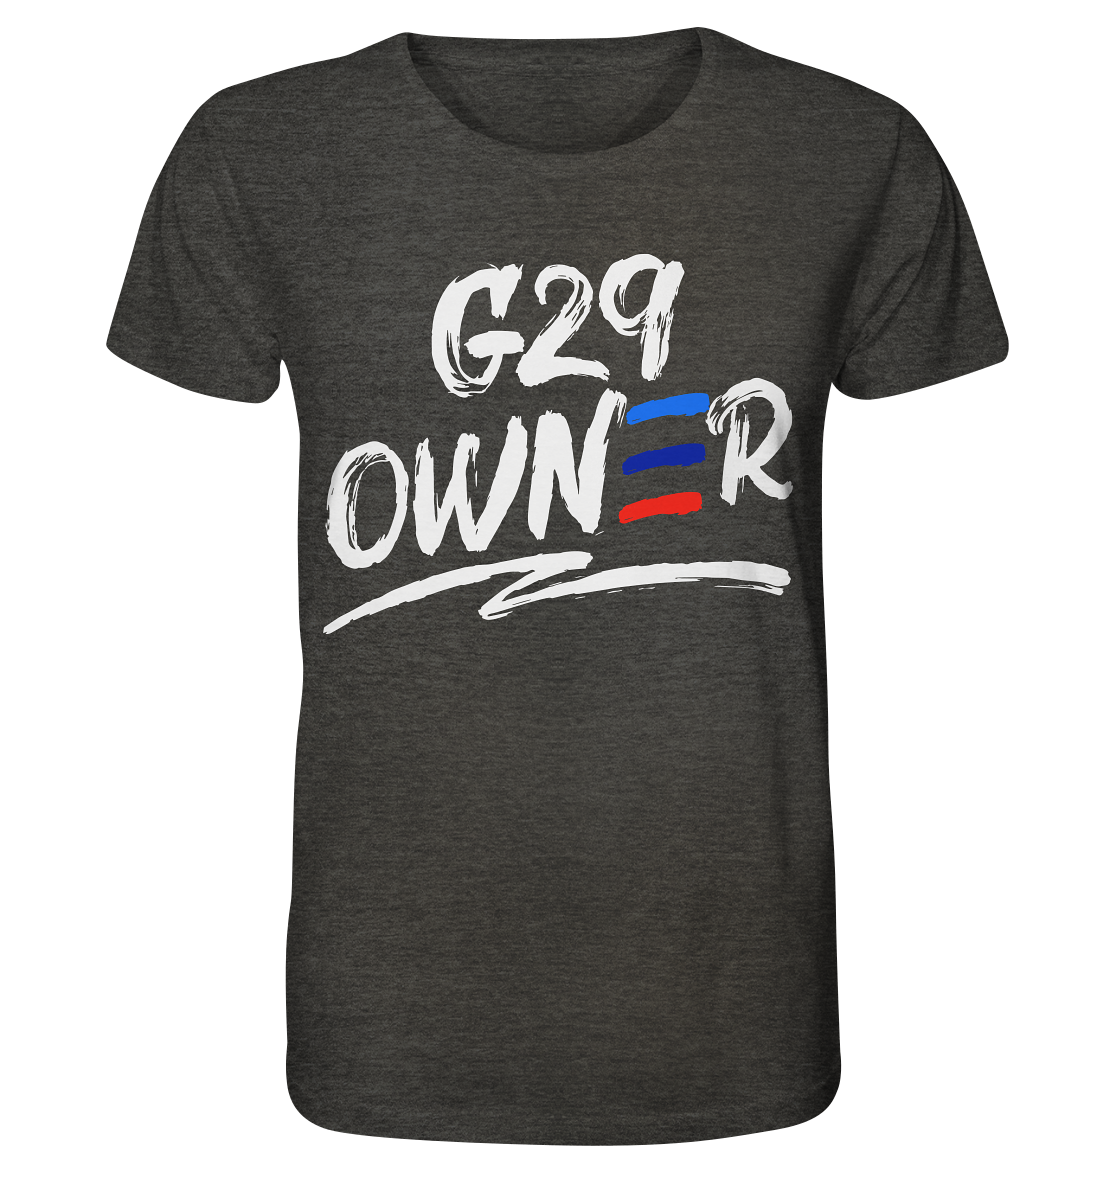 COD_BGKG29OWNER - Organic Shirt (meliert)